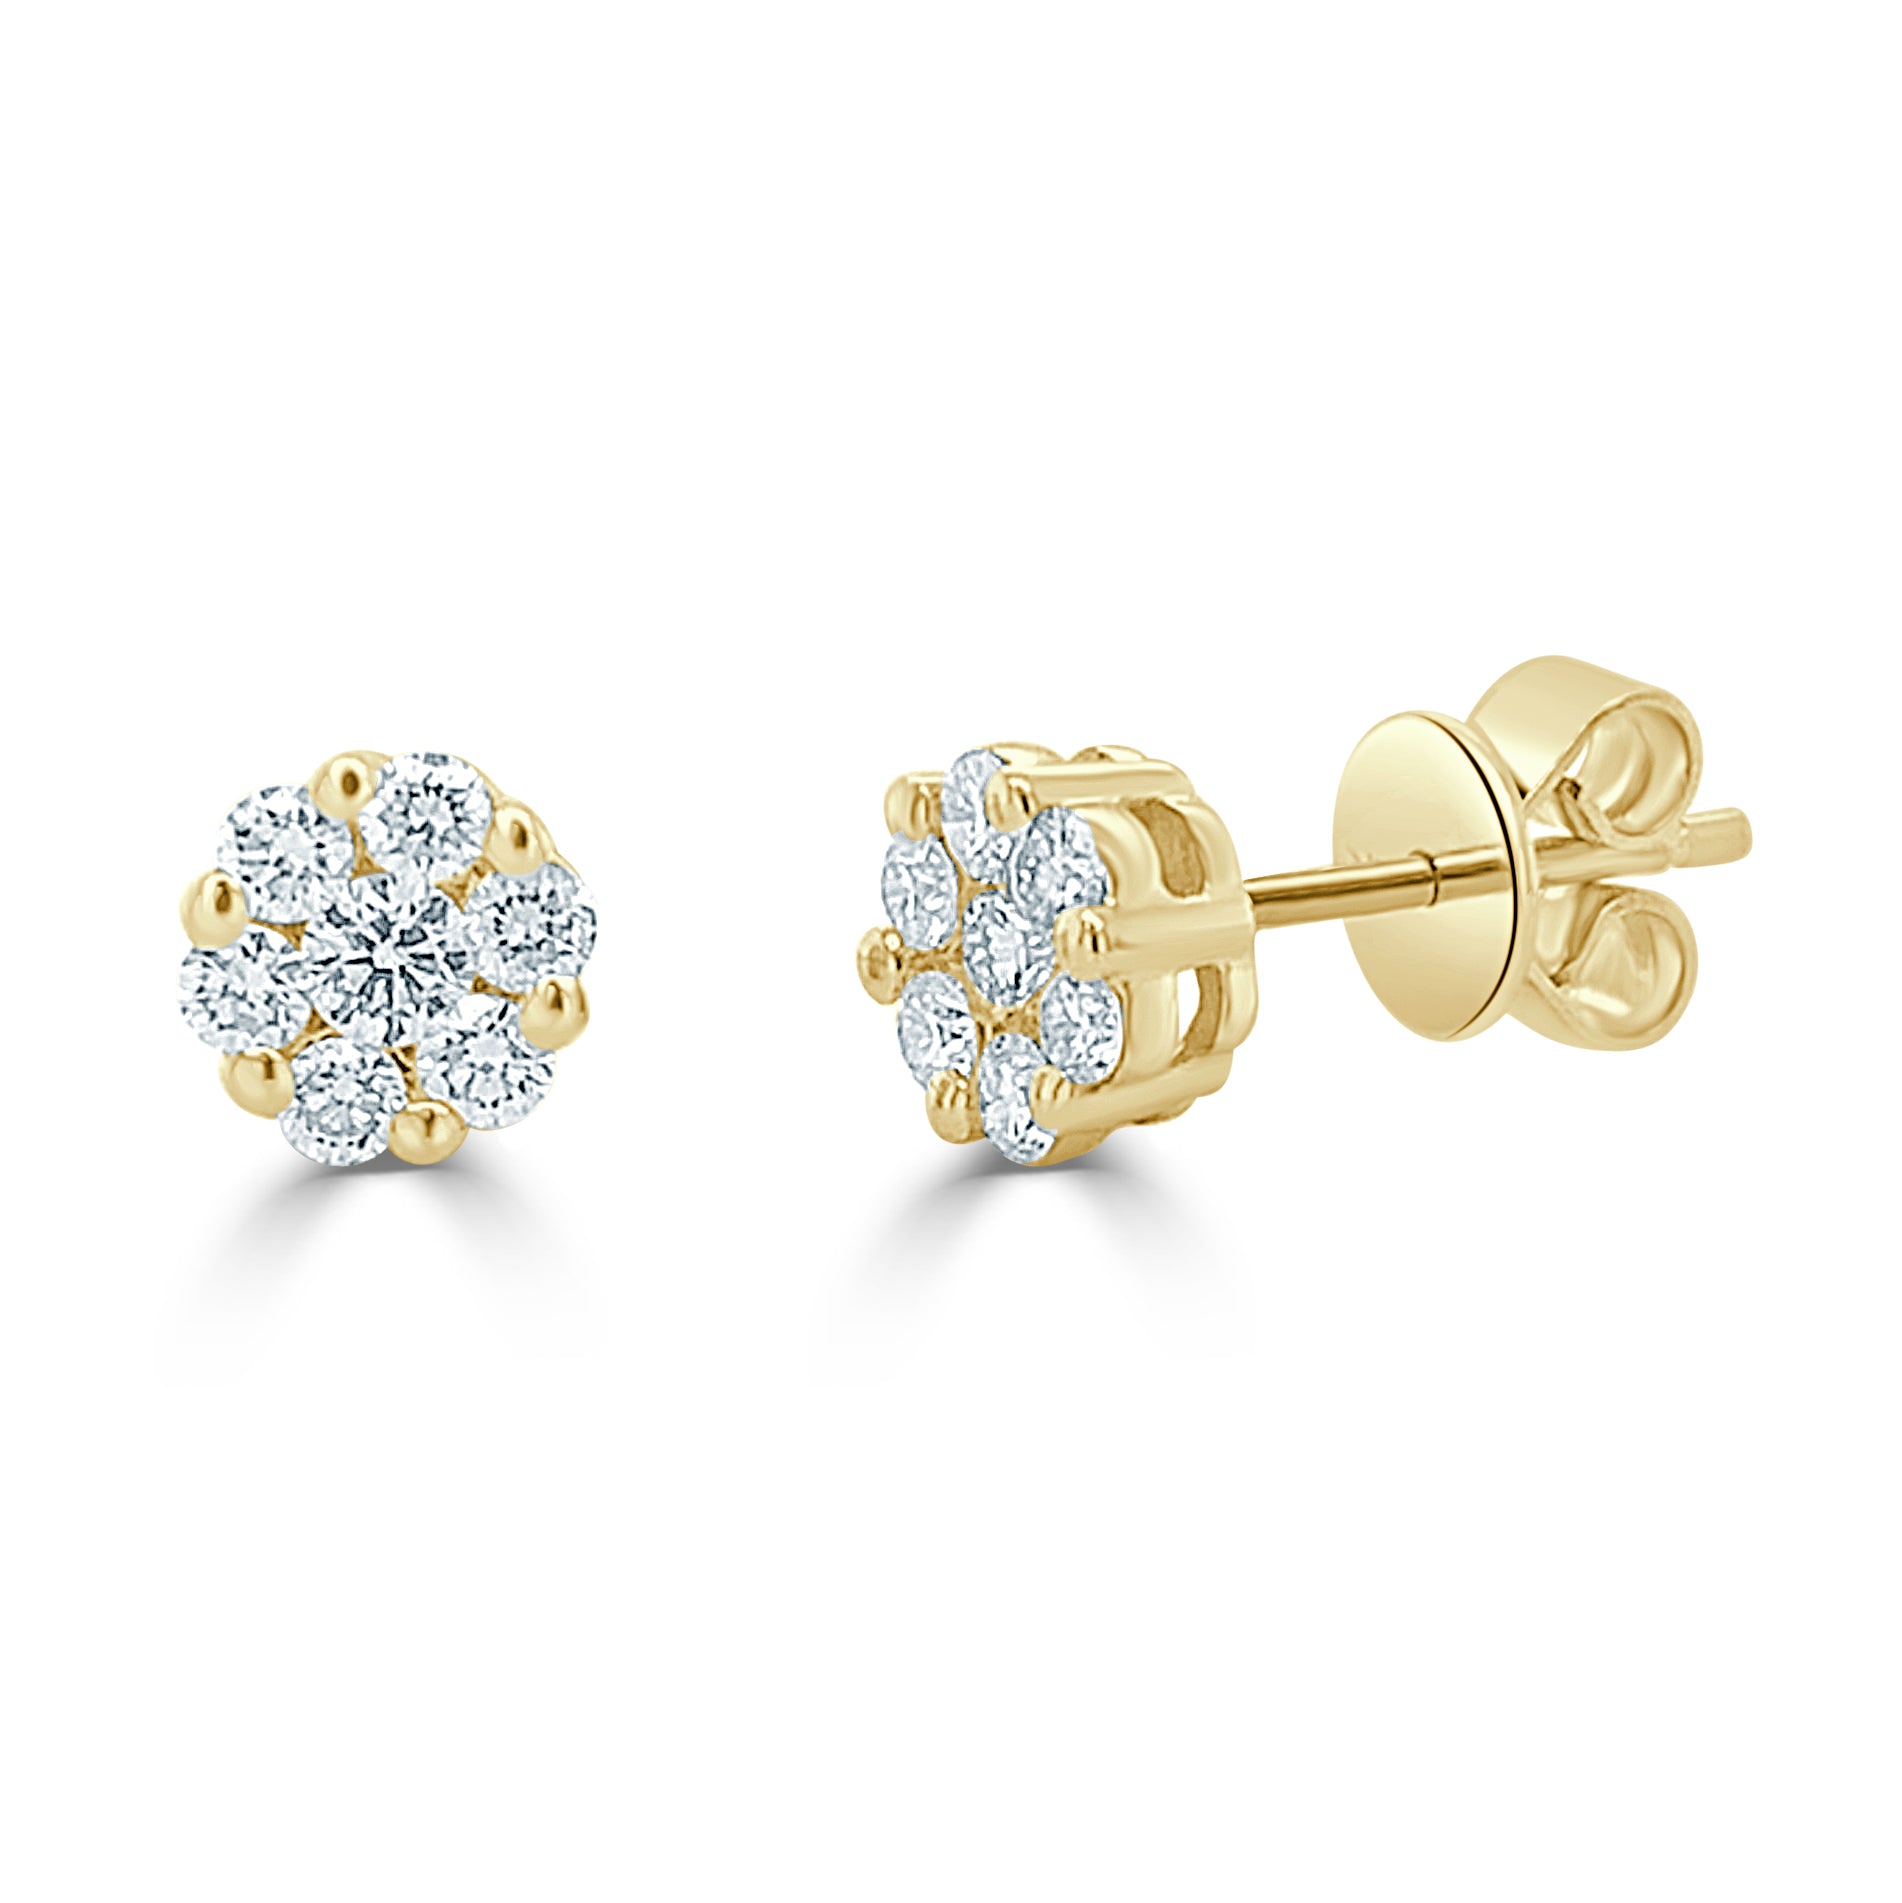 14k Gold & Diamond Cluster Earrings - 0.46ct